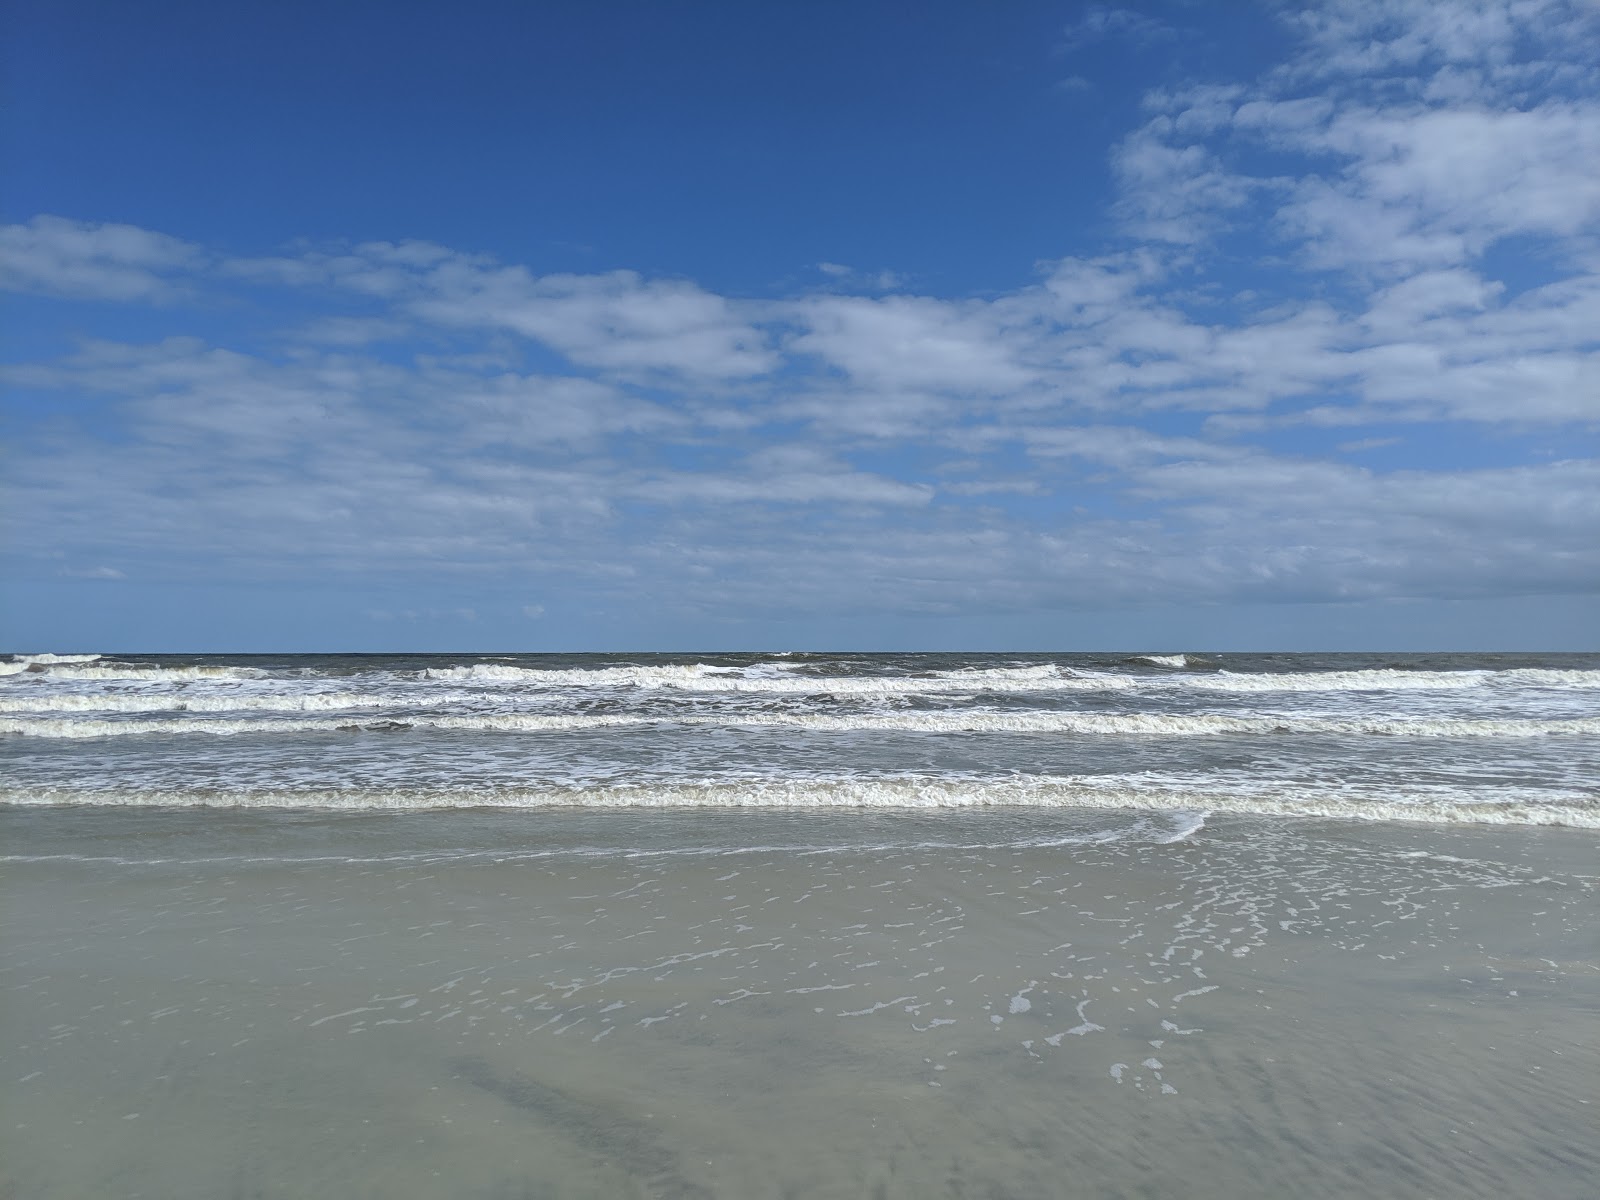 Valokuva Stafford beachista. pinnalla turkoosi vesi:n kanssa